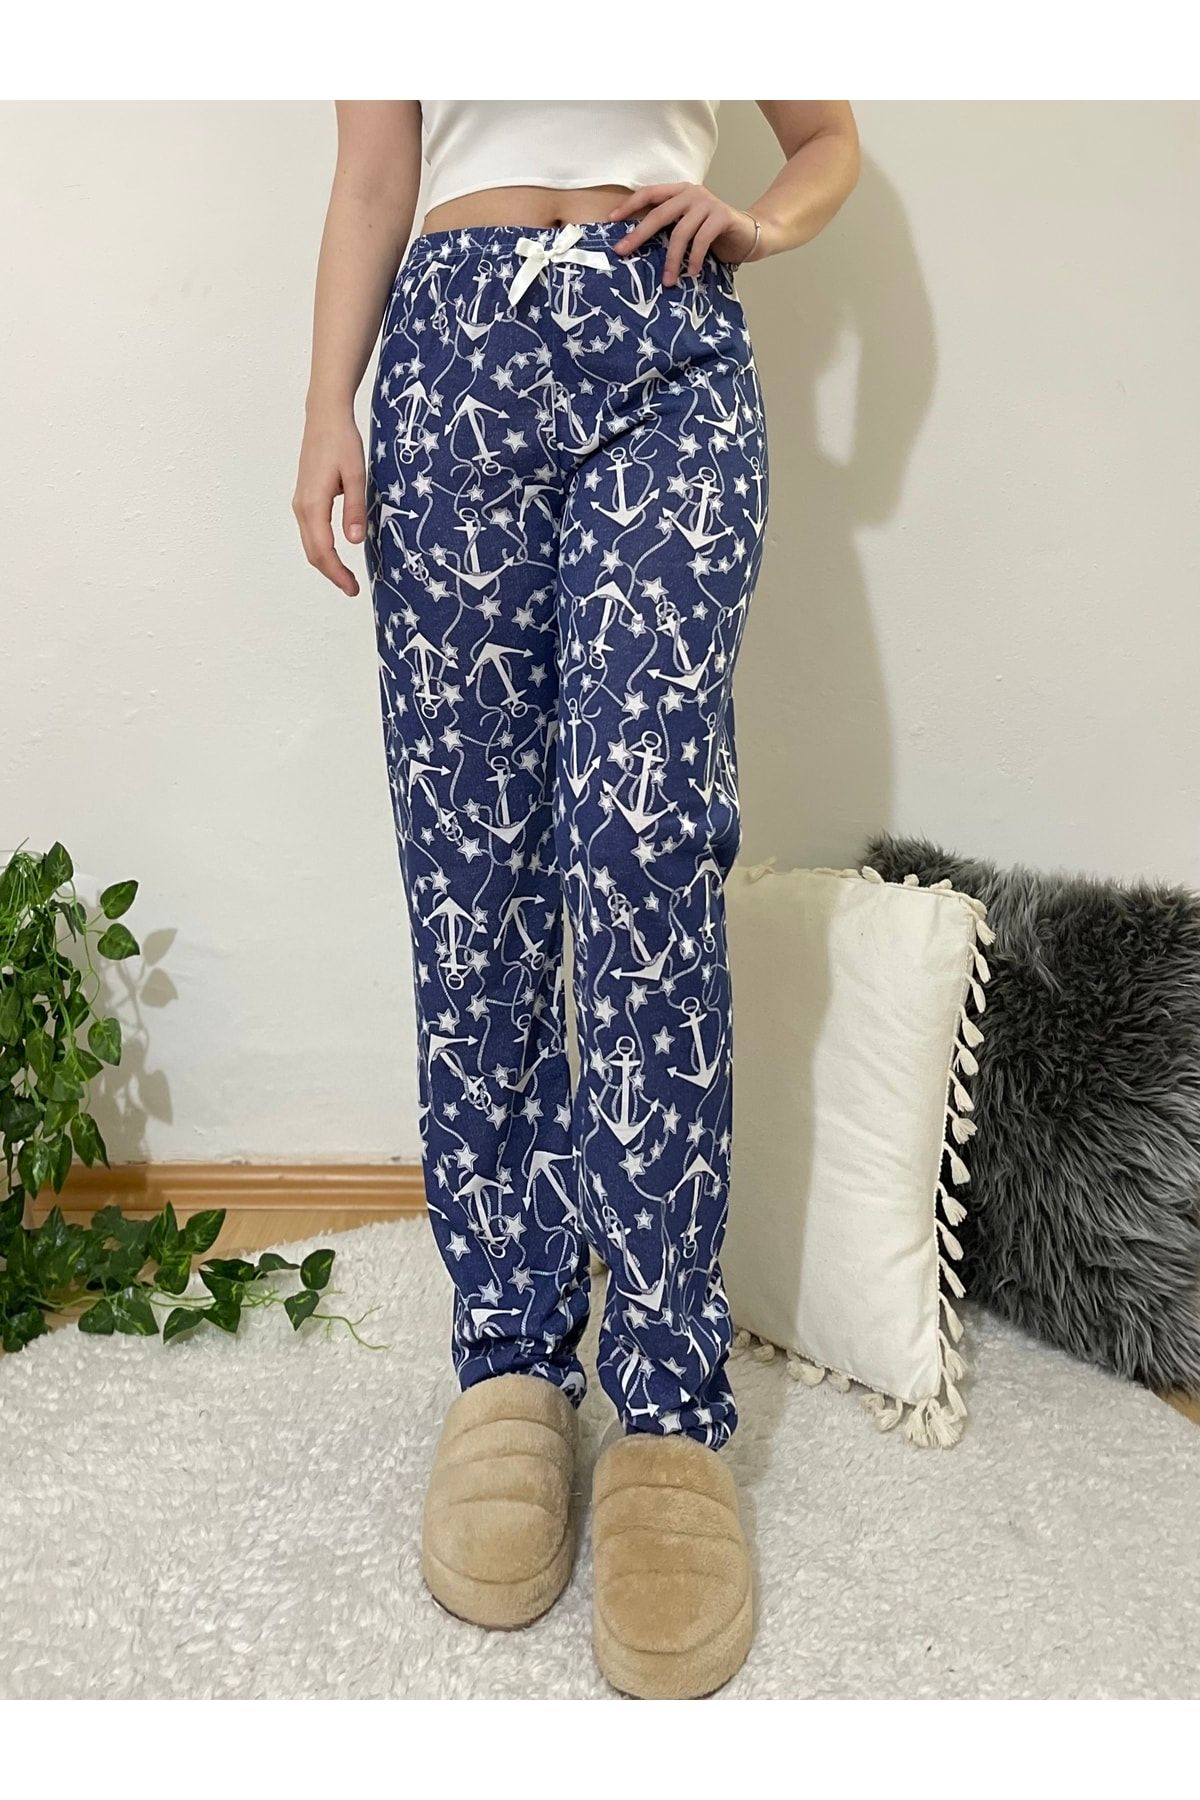 Betimoda Kadın Pijama Altı Kurdeleli Çapalı Lacivert